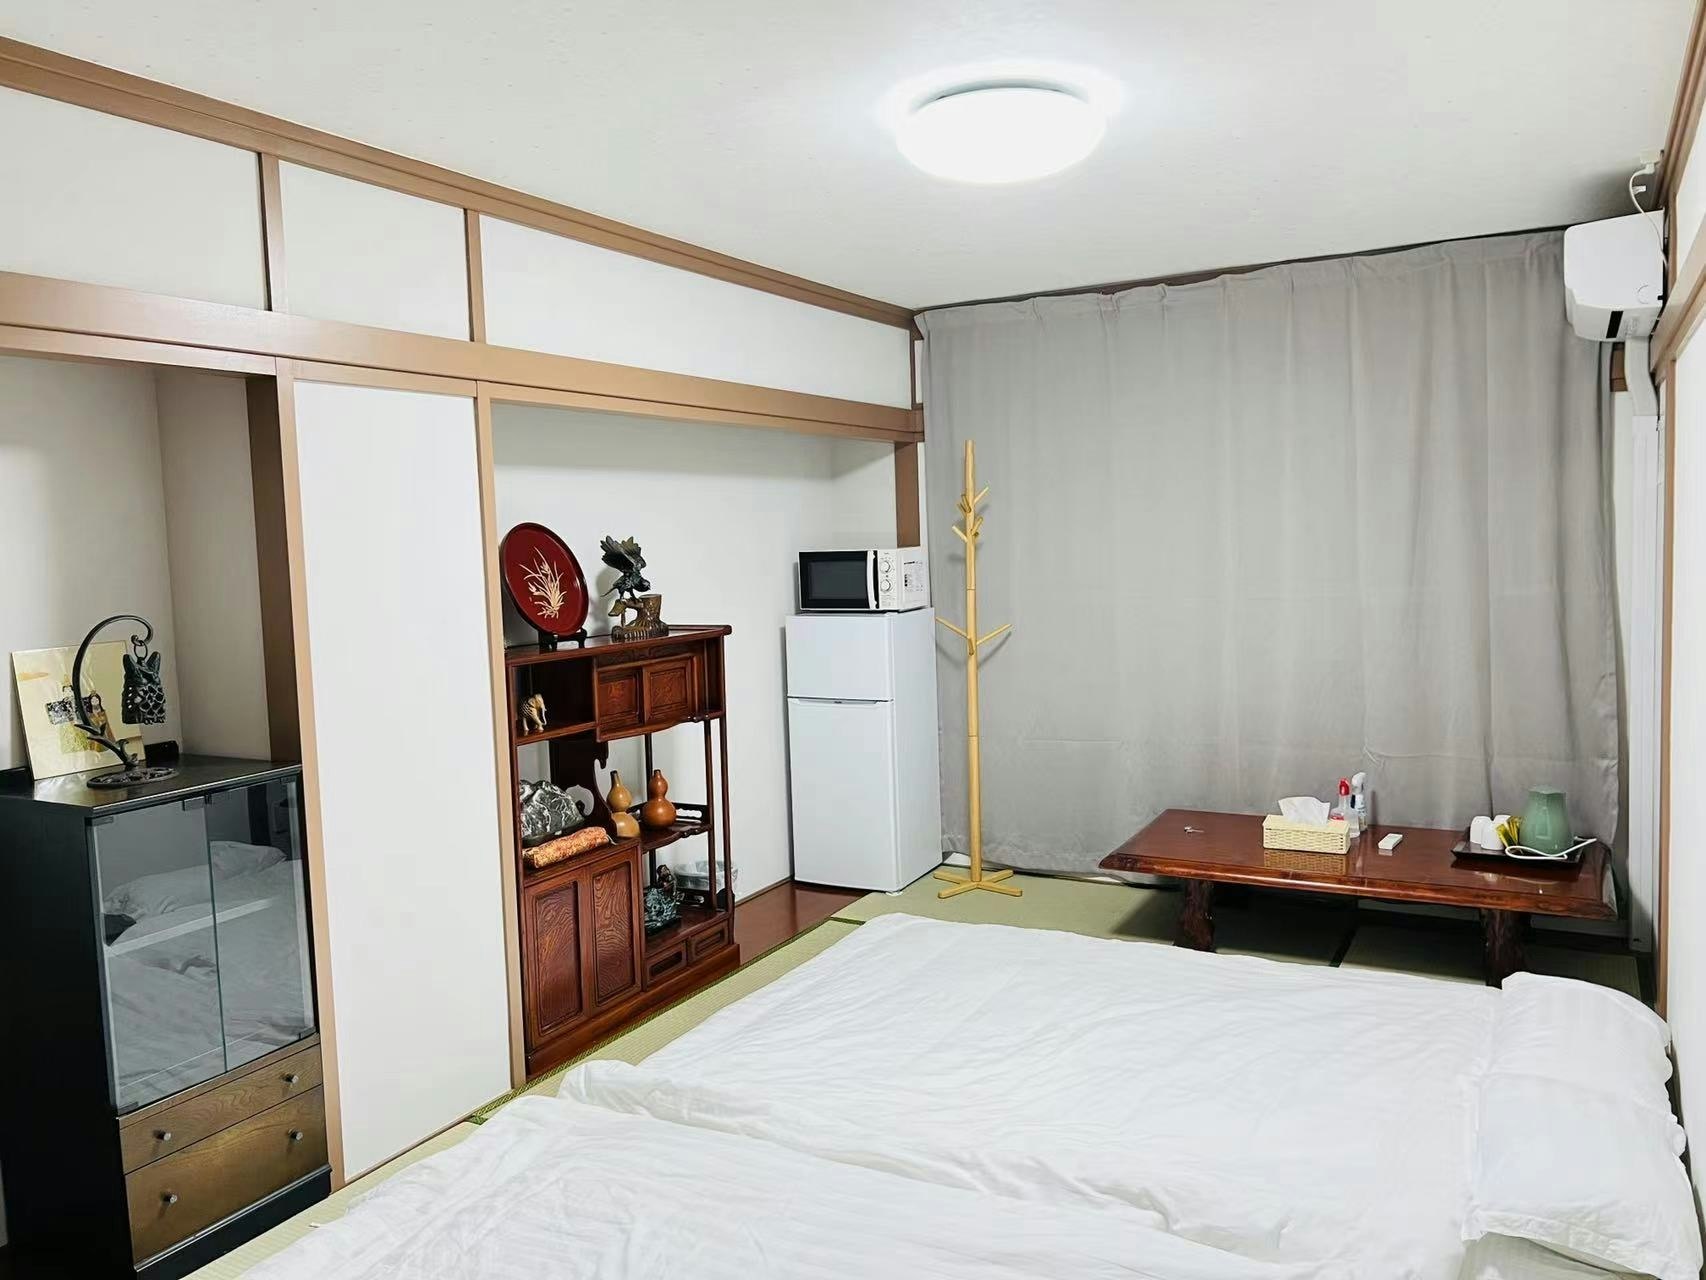 24時間出入り自由!高松の中心街の近くに位置し、観光や買い物も楽しめます!和室のお部屋になります!